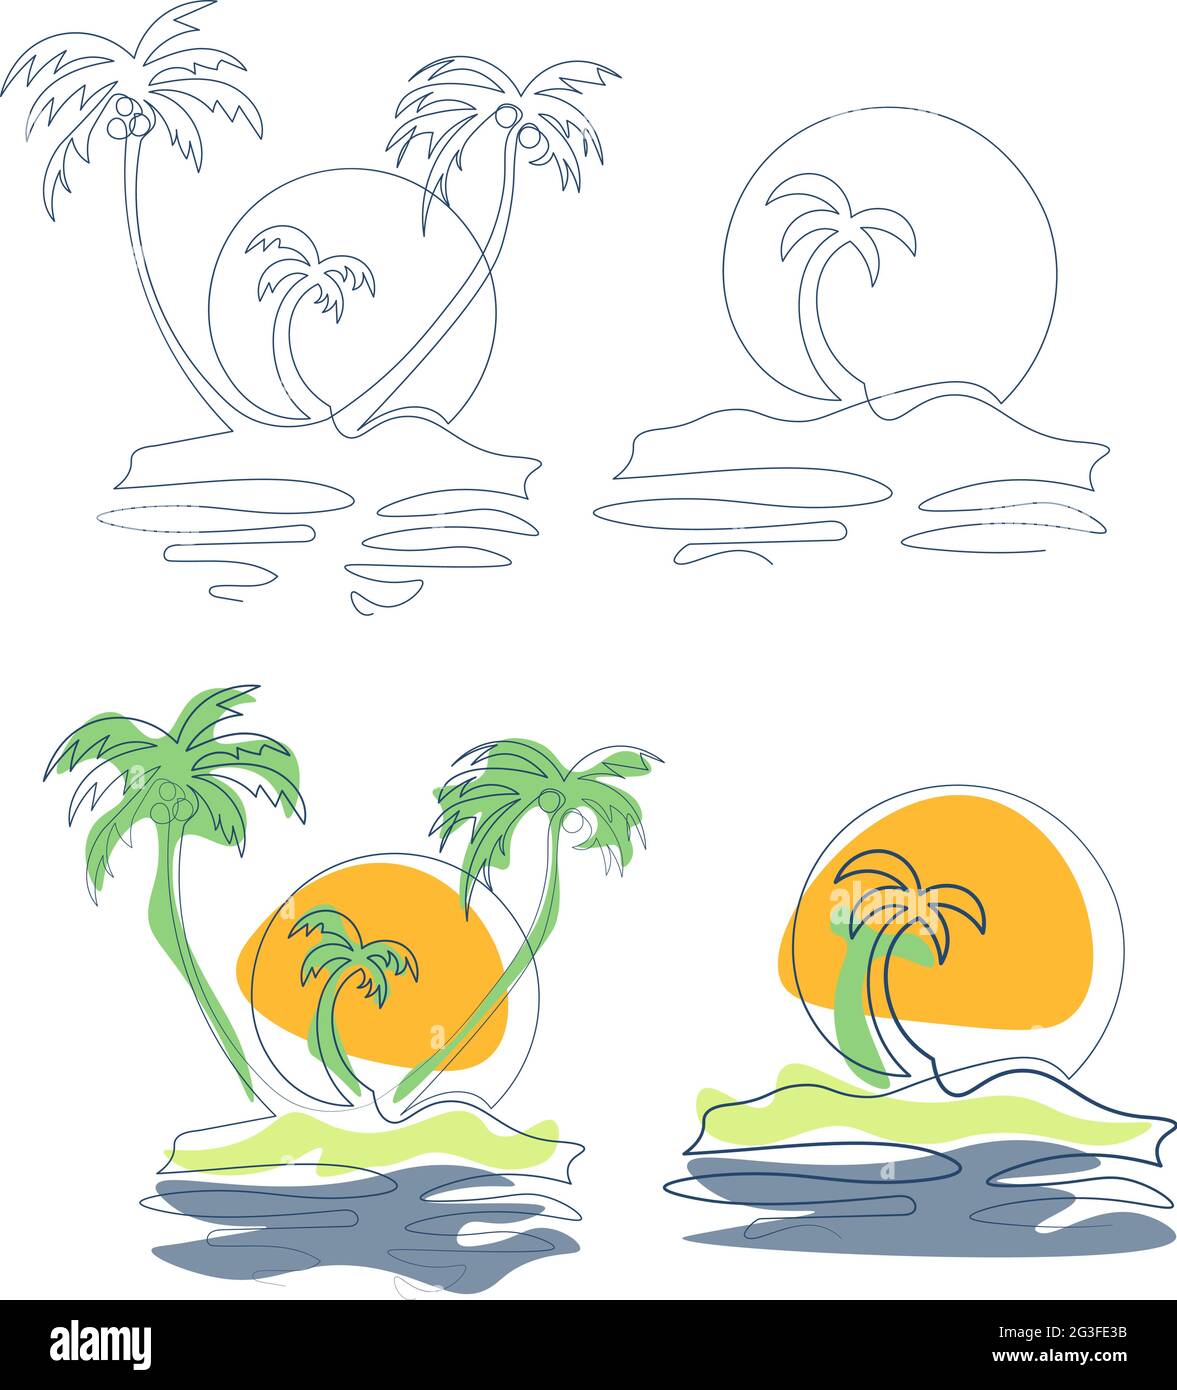 Satz von Ikonen mit tropischen Inseln Zeichnung mit einlinigen und farbigen Formen Stock Vektor